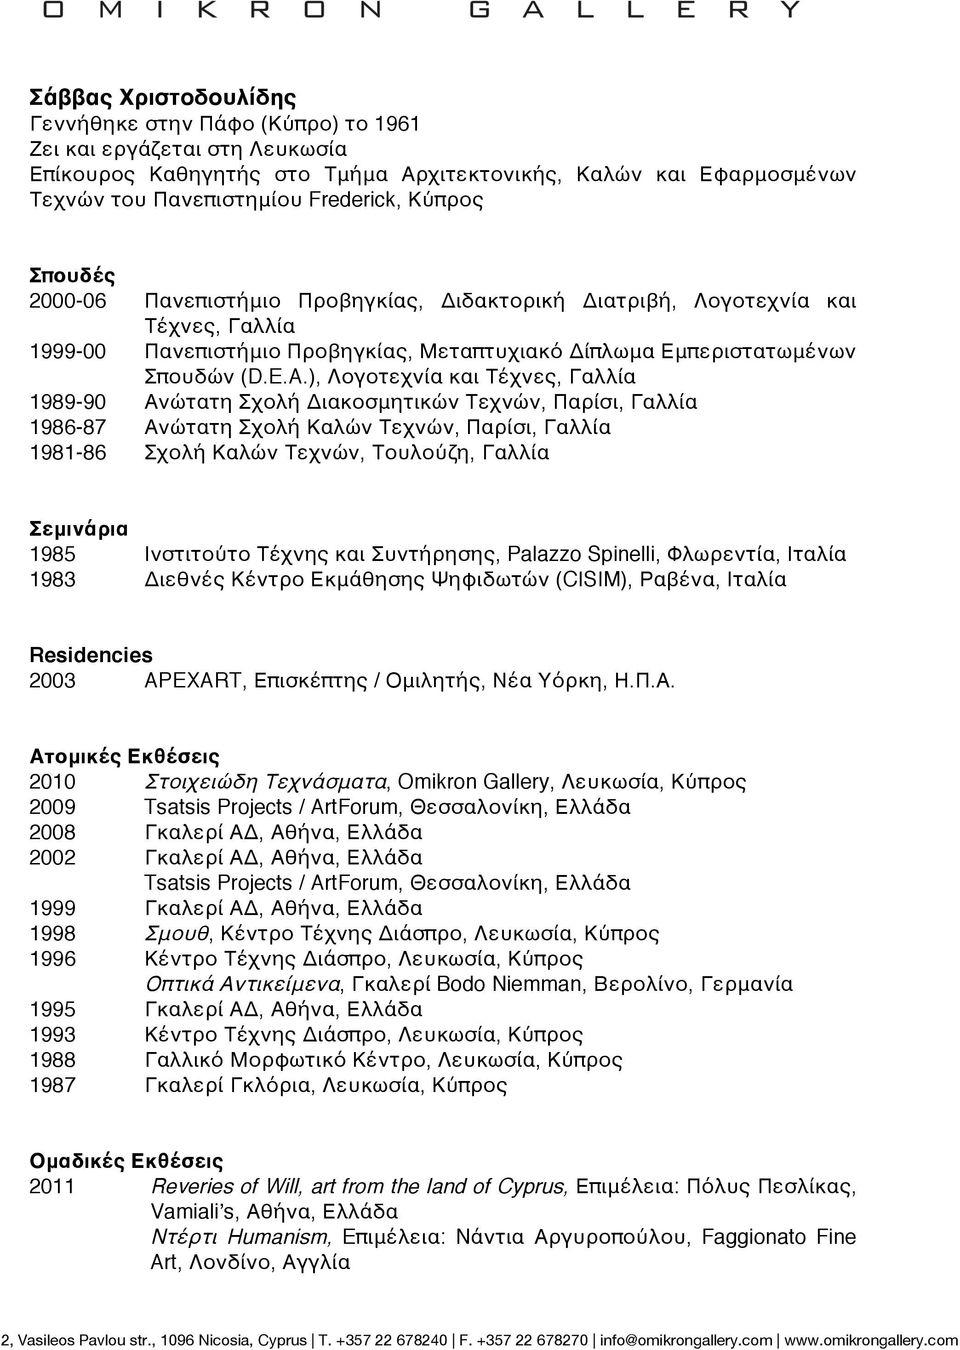 ), Λογοτεχνία και Τέχνες, Γαλλία 1989-90 Ανώτατη Σχολή Διακοσμητικών Τεχνών, Παρίσι, Γαλλία 1986-87 Ανώτατη Σχολή Καλών Τεχνών, Παρίσι, Γαλλία 1981-86 Σχολή Καλών Τεχνών, Τουλούζη, Γαλλία Σεμινάρια